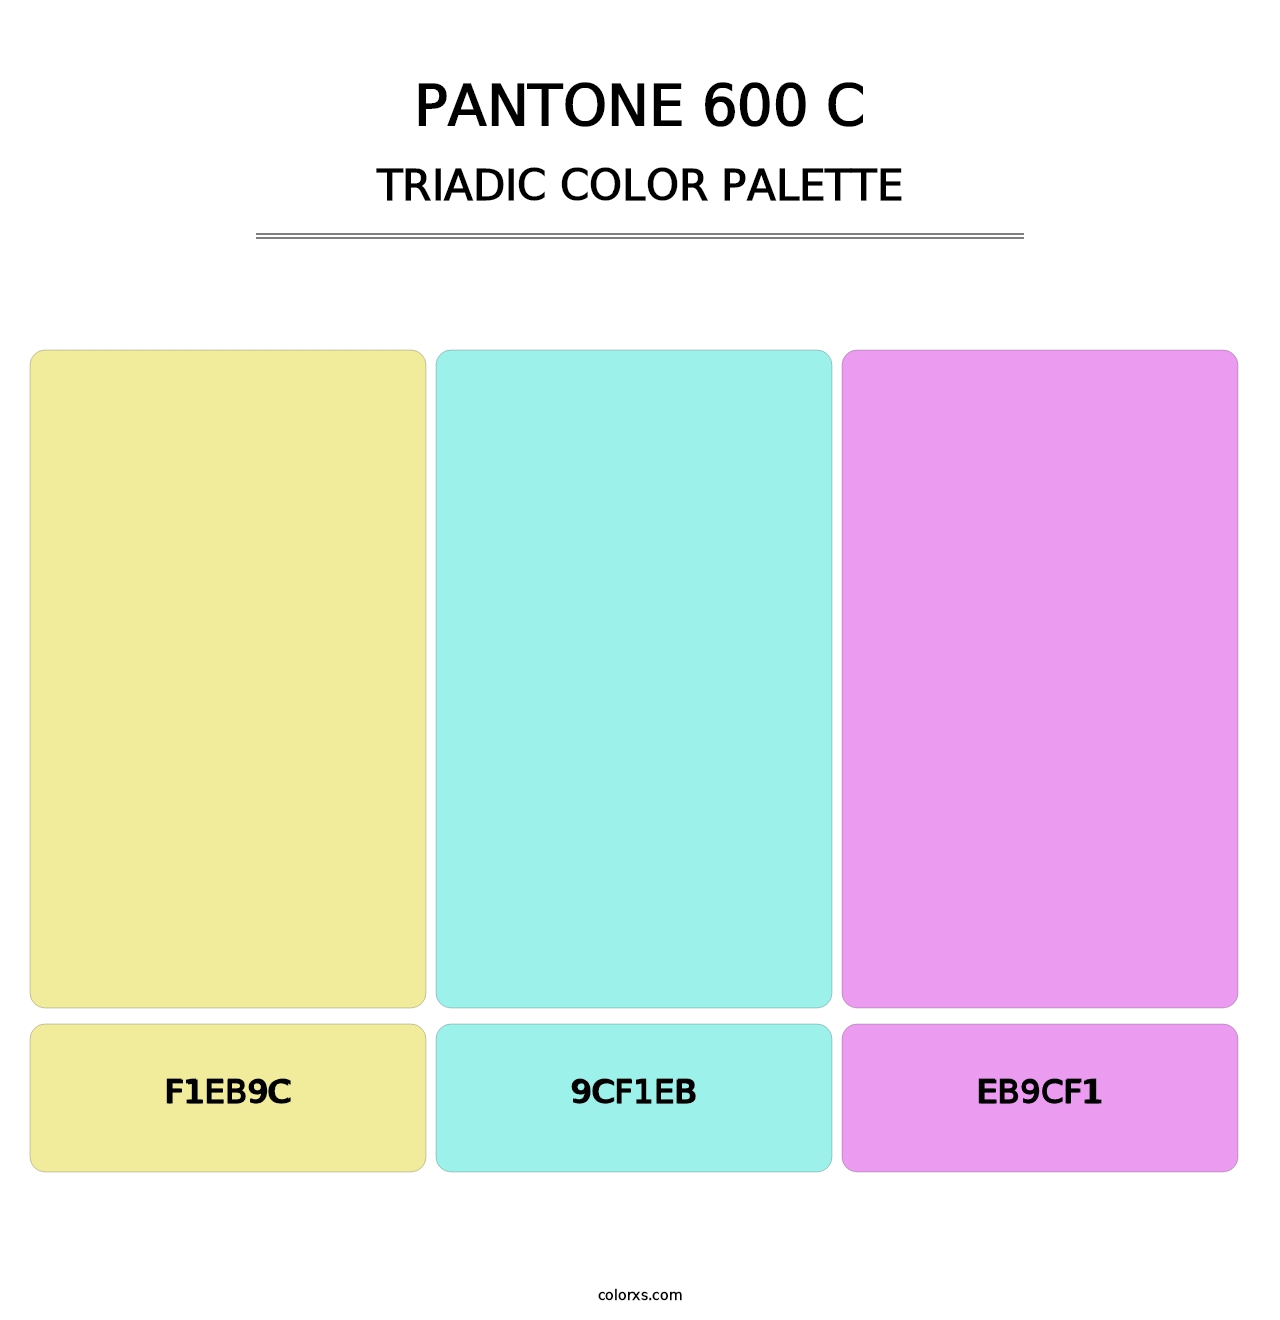 PANTONE 600 C - Triadic Color Palette